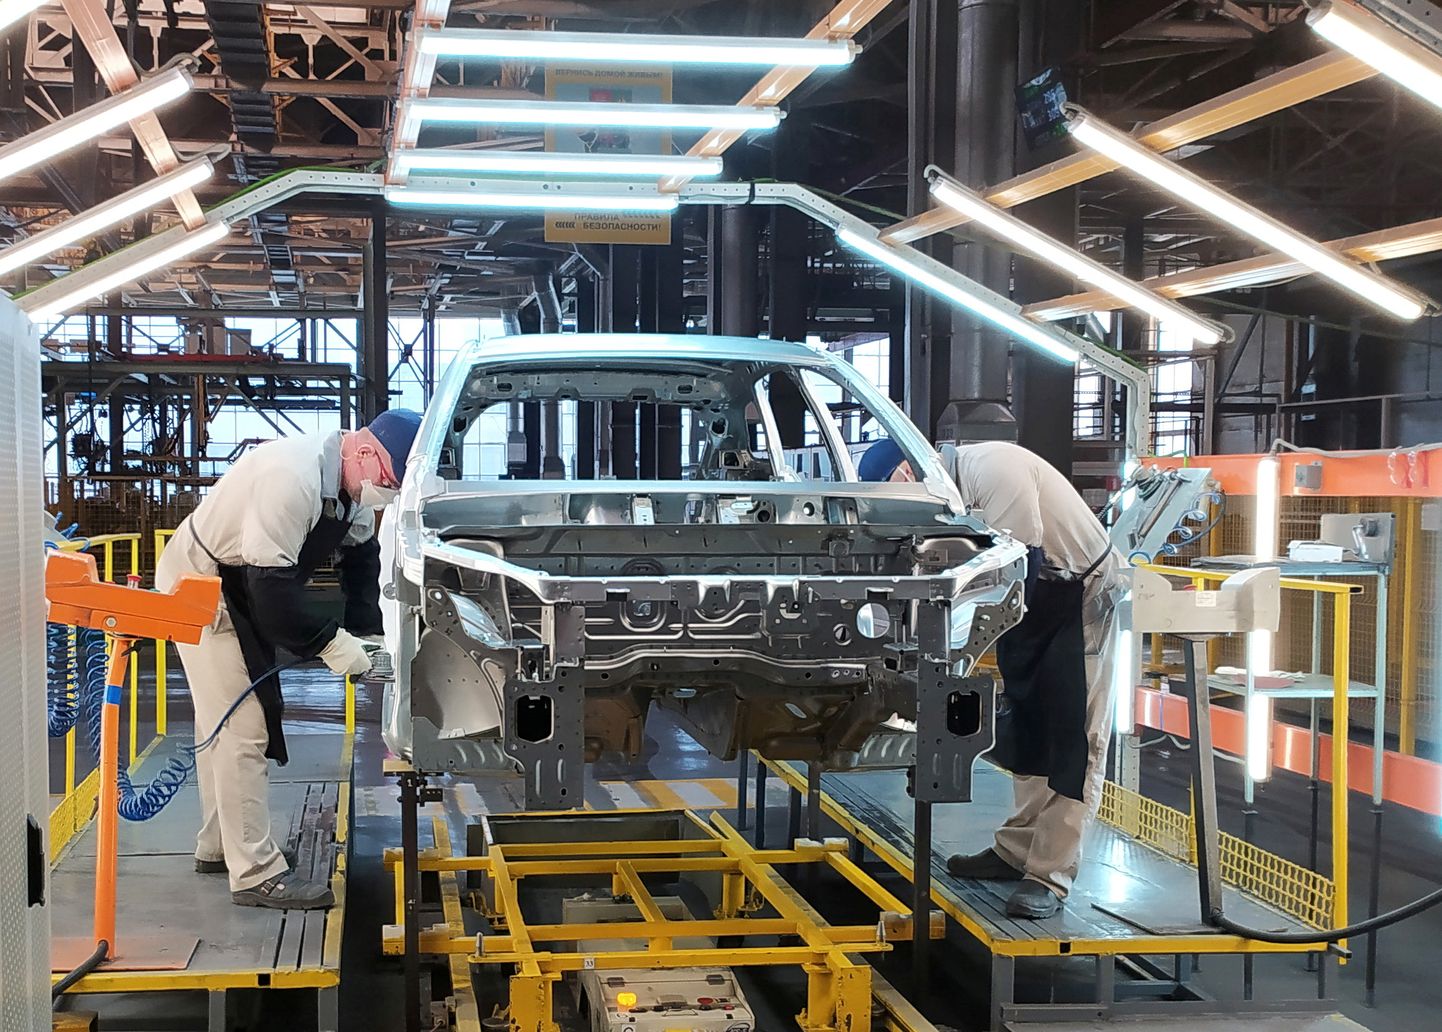 Venemaa suurima autotootja AvtoVaz on komponentide nappuse tõttu peatunud tehased. Samas pole teada, kas just AutoVaz komponente küsis.